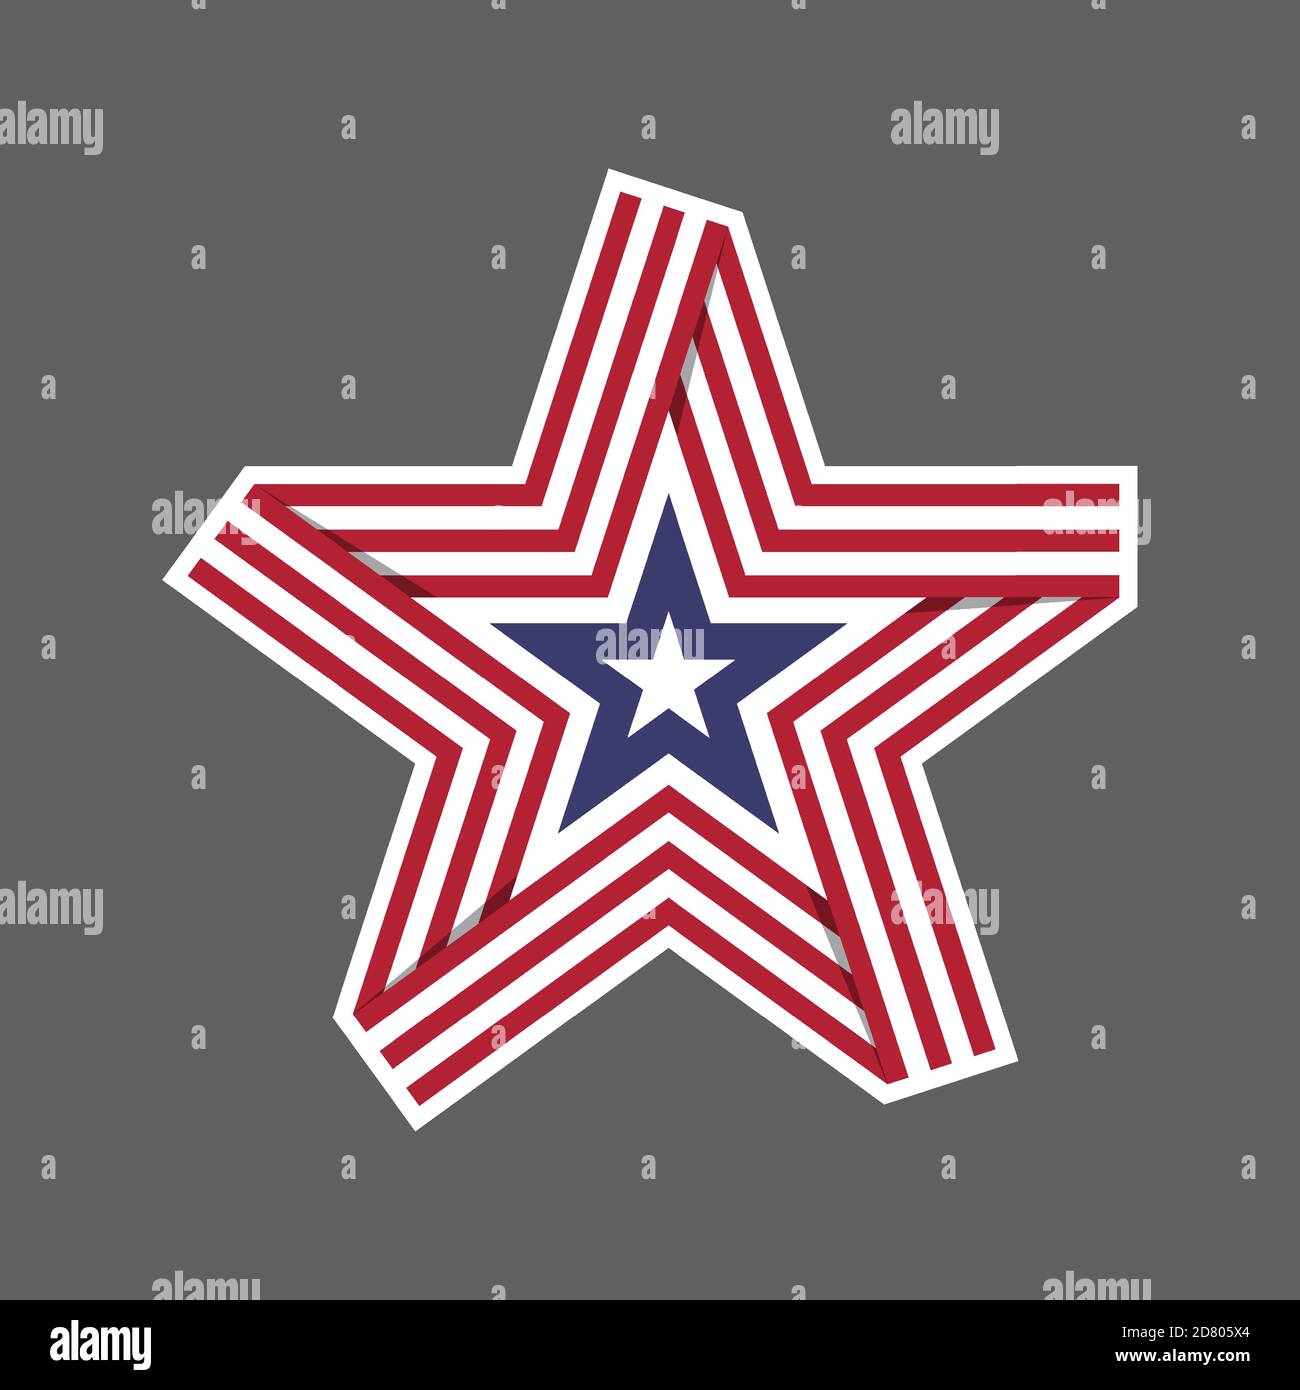 Vereinigte Staaten von Amerika USA Flagge Schild Symbol Logo Vektor Illustration. Unabhängigkeitstag. Juli. Präsidentschaftswahl Stock Vektor